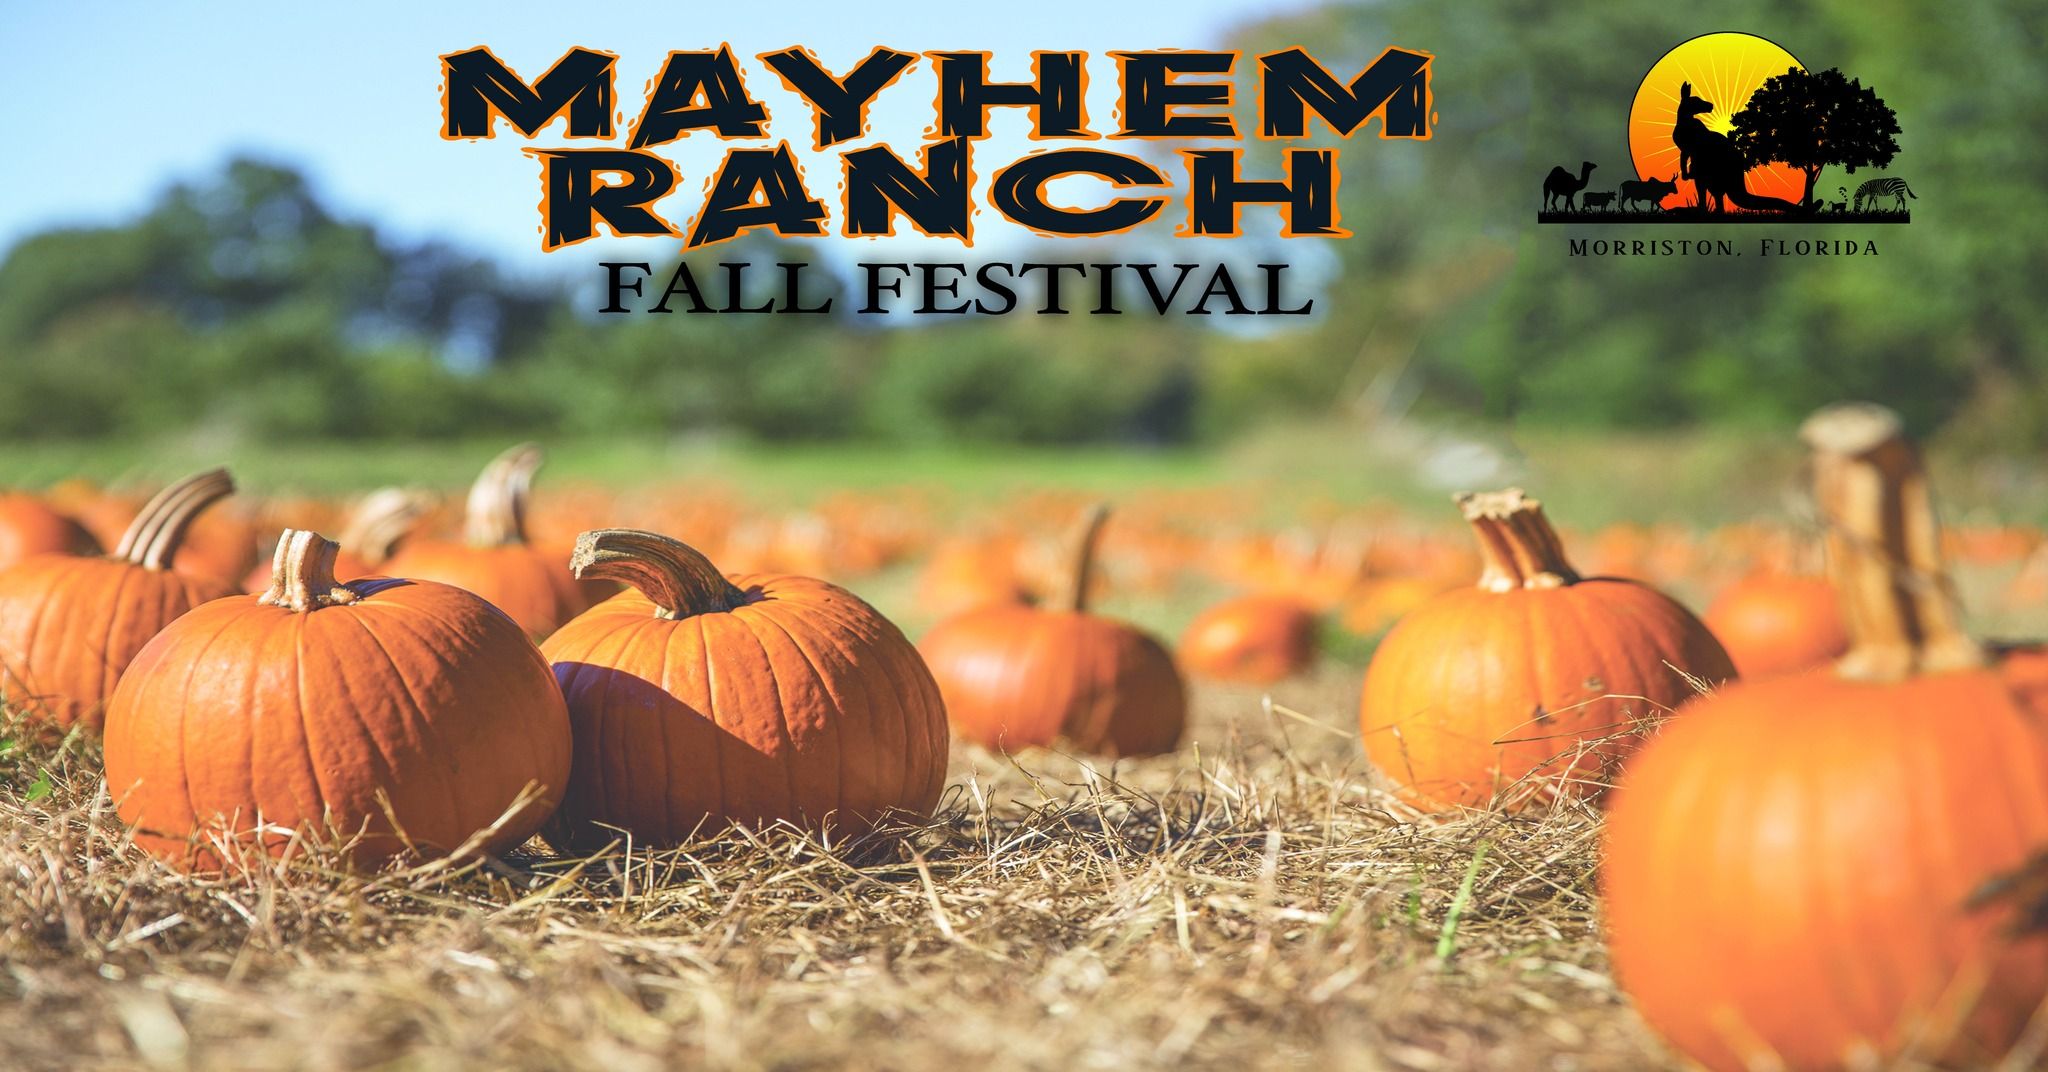 Mayhem Ranch Fall Festival